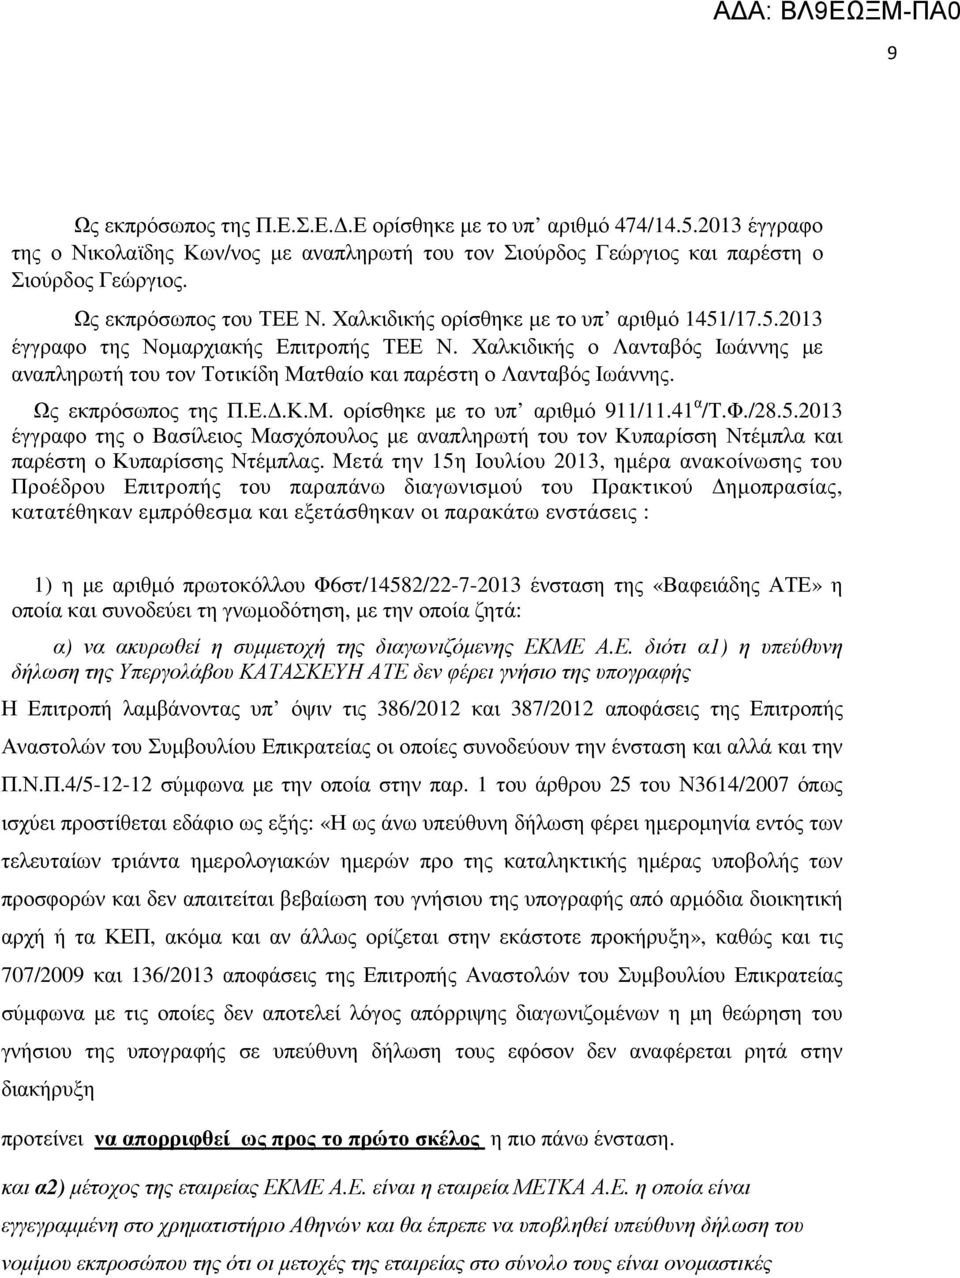 Ως εκπρόσωπος της Π.Ε..Κ.Μ. ορίσθηκε µε το υπ αριθµό 911/11.41 α /Τ.Φ./28.5.2013 έγγραφο της ο Βασίλειος Μασχόπουλος µε αναπληρωτή του τον Κυπαρίσση Ντέµπλα και παρέστη ο Κυπαρίσσης Ντέµπλας.